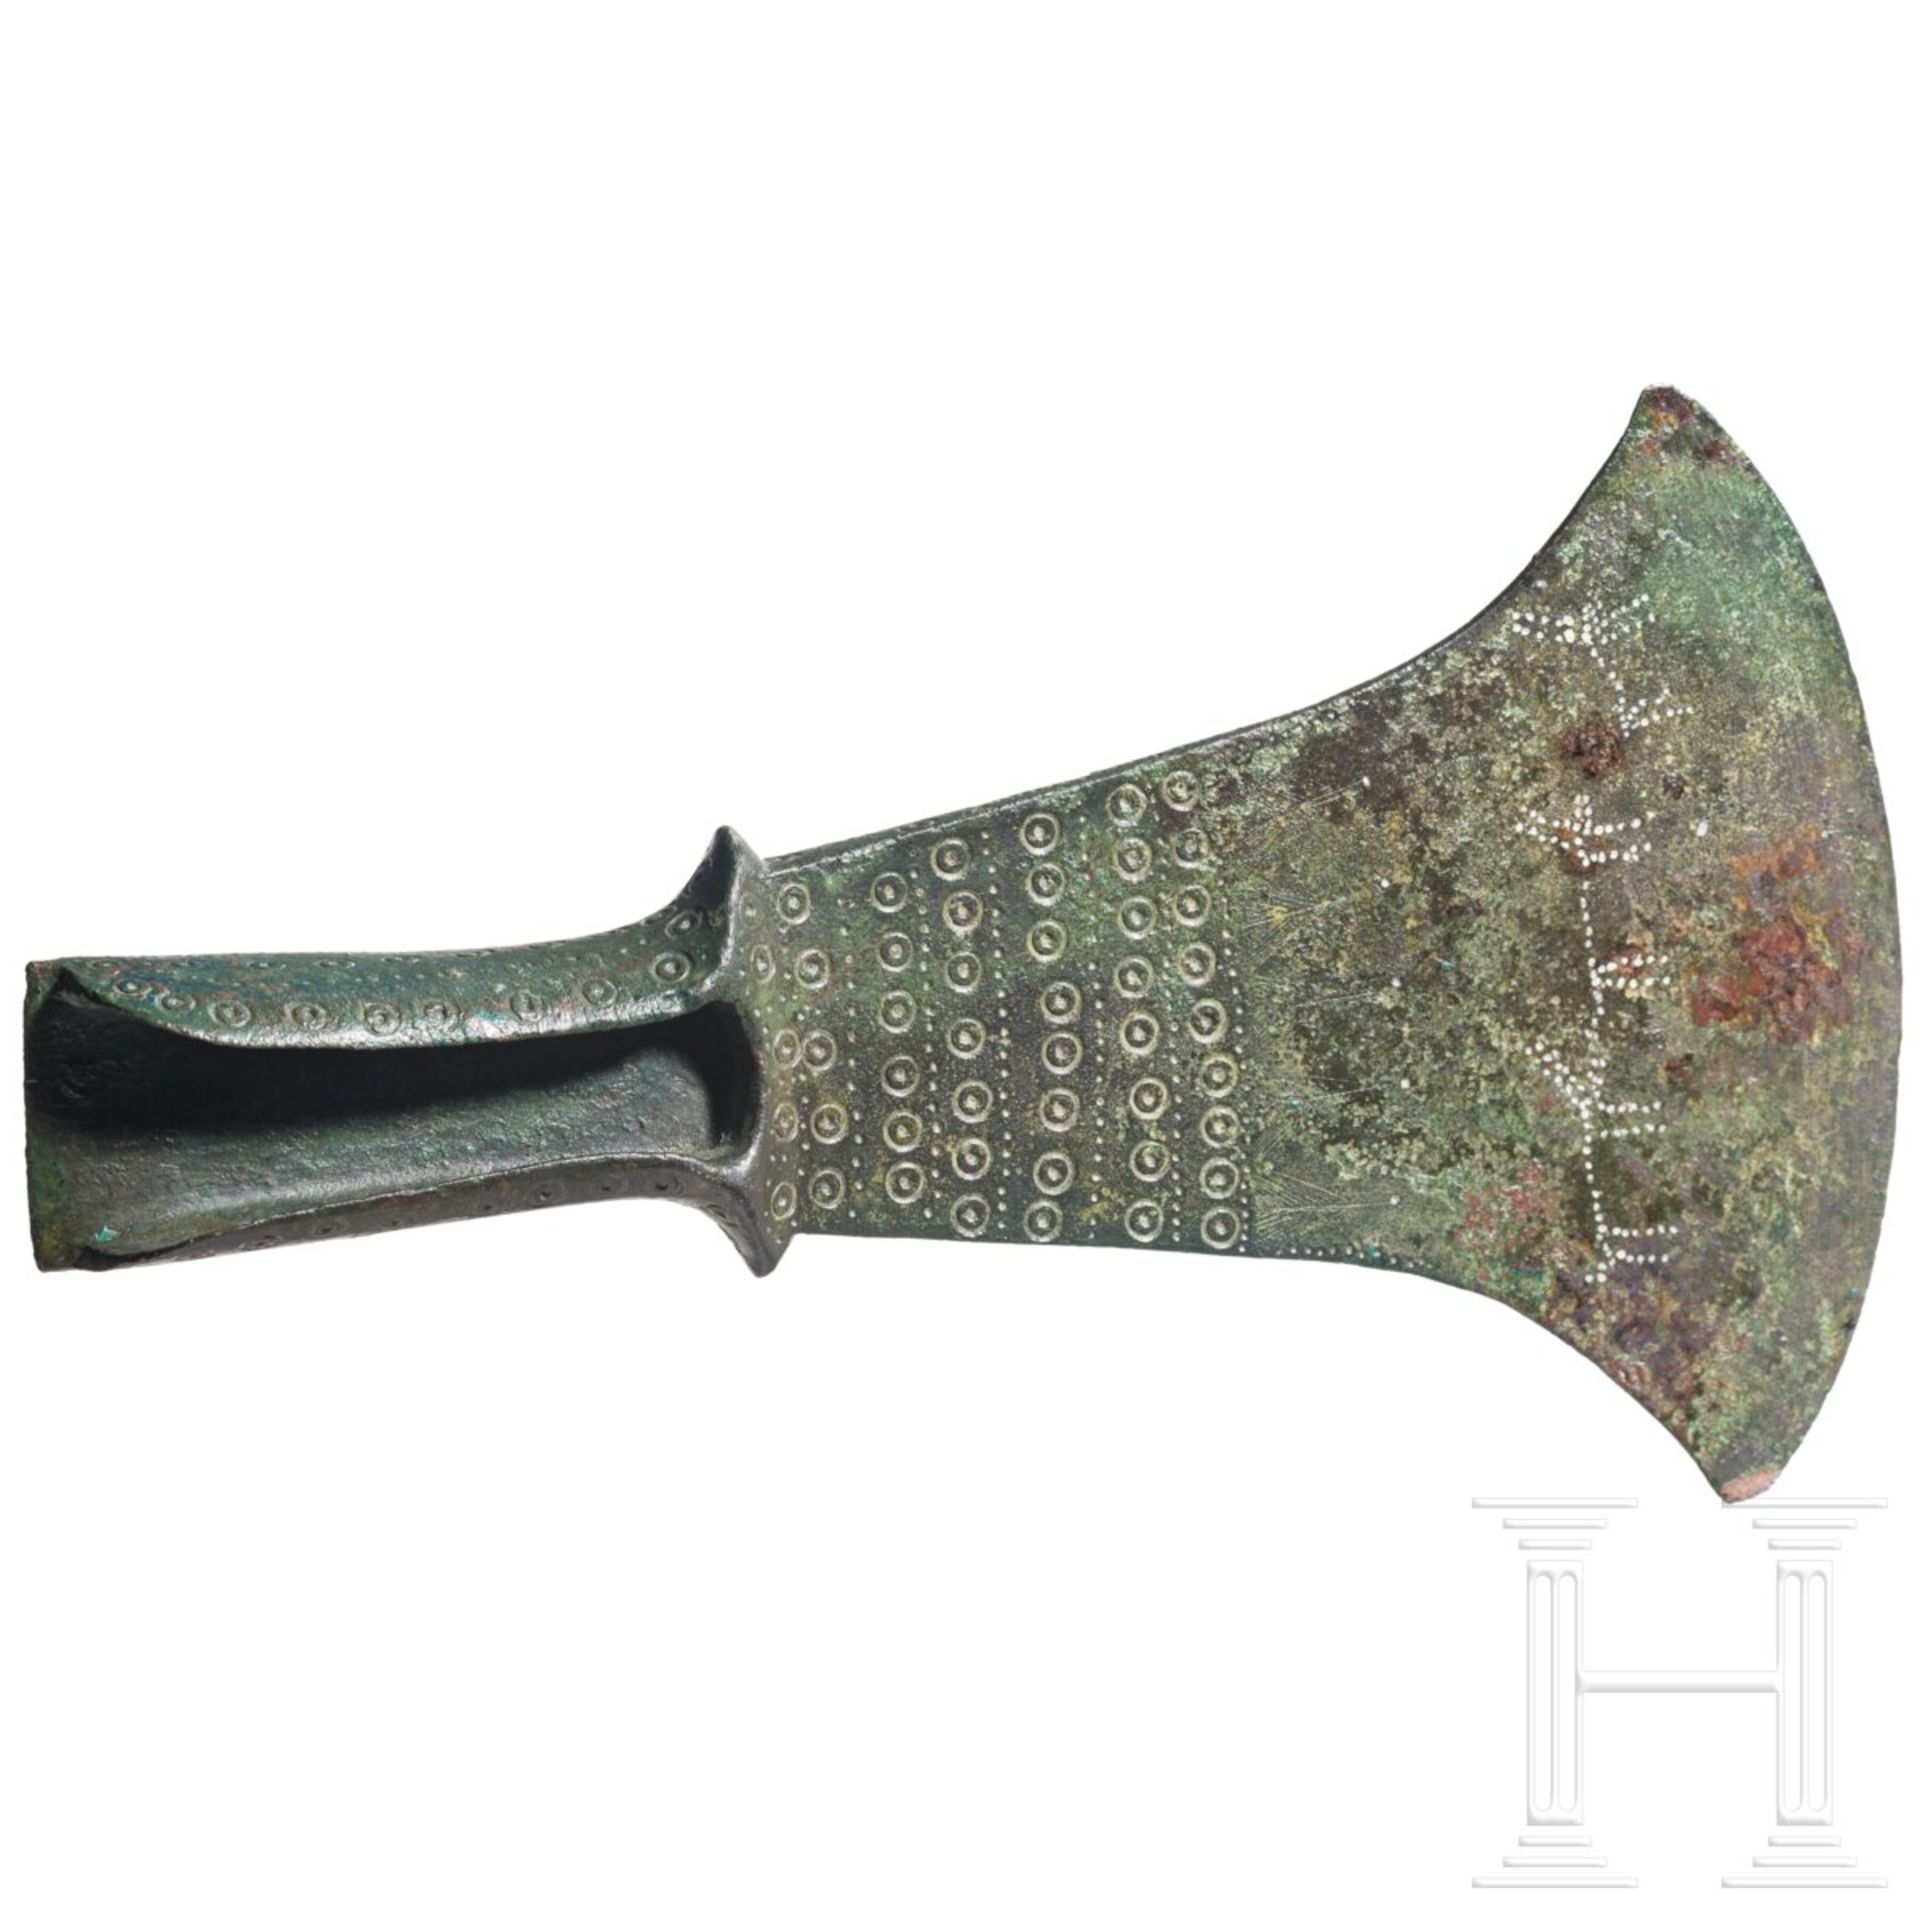 Bronzebeil für zeremonielle Zwecke, etruskisch, 2. Hälfte 8. - frühes 7. Jhdt. v. Chr. - Bild 3 aus 7